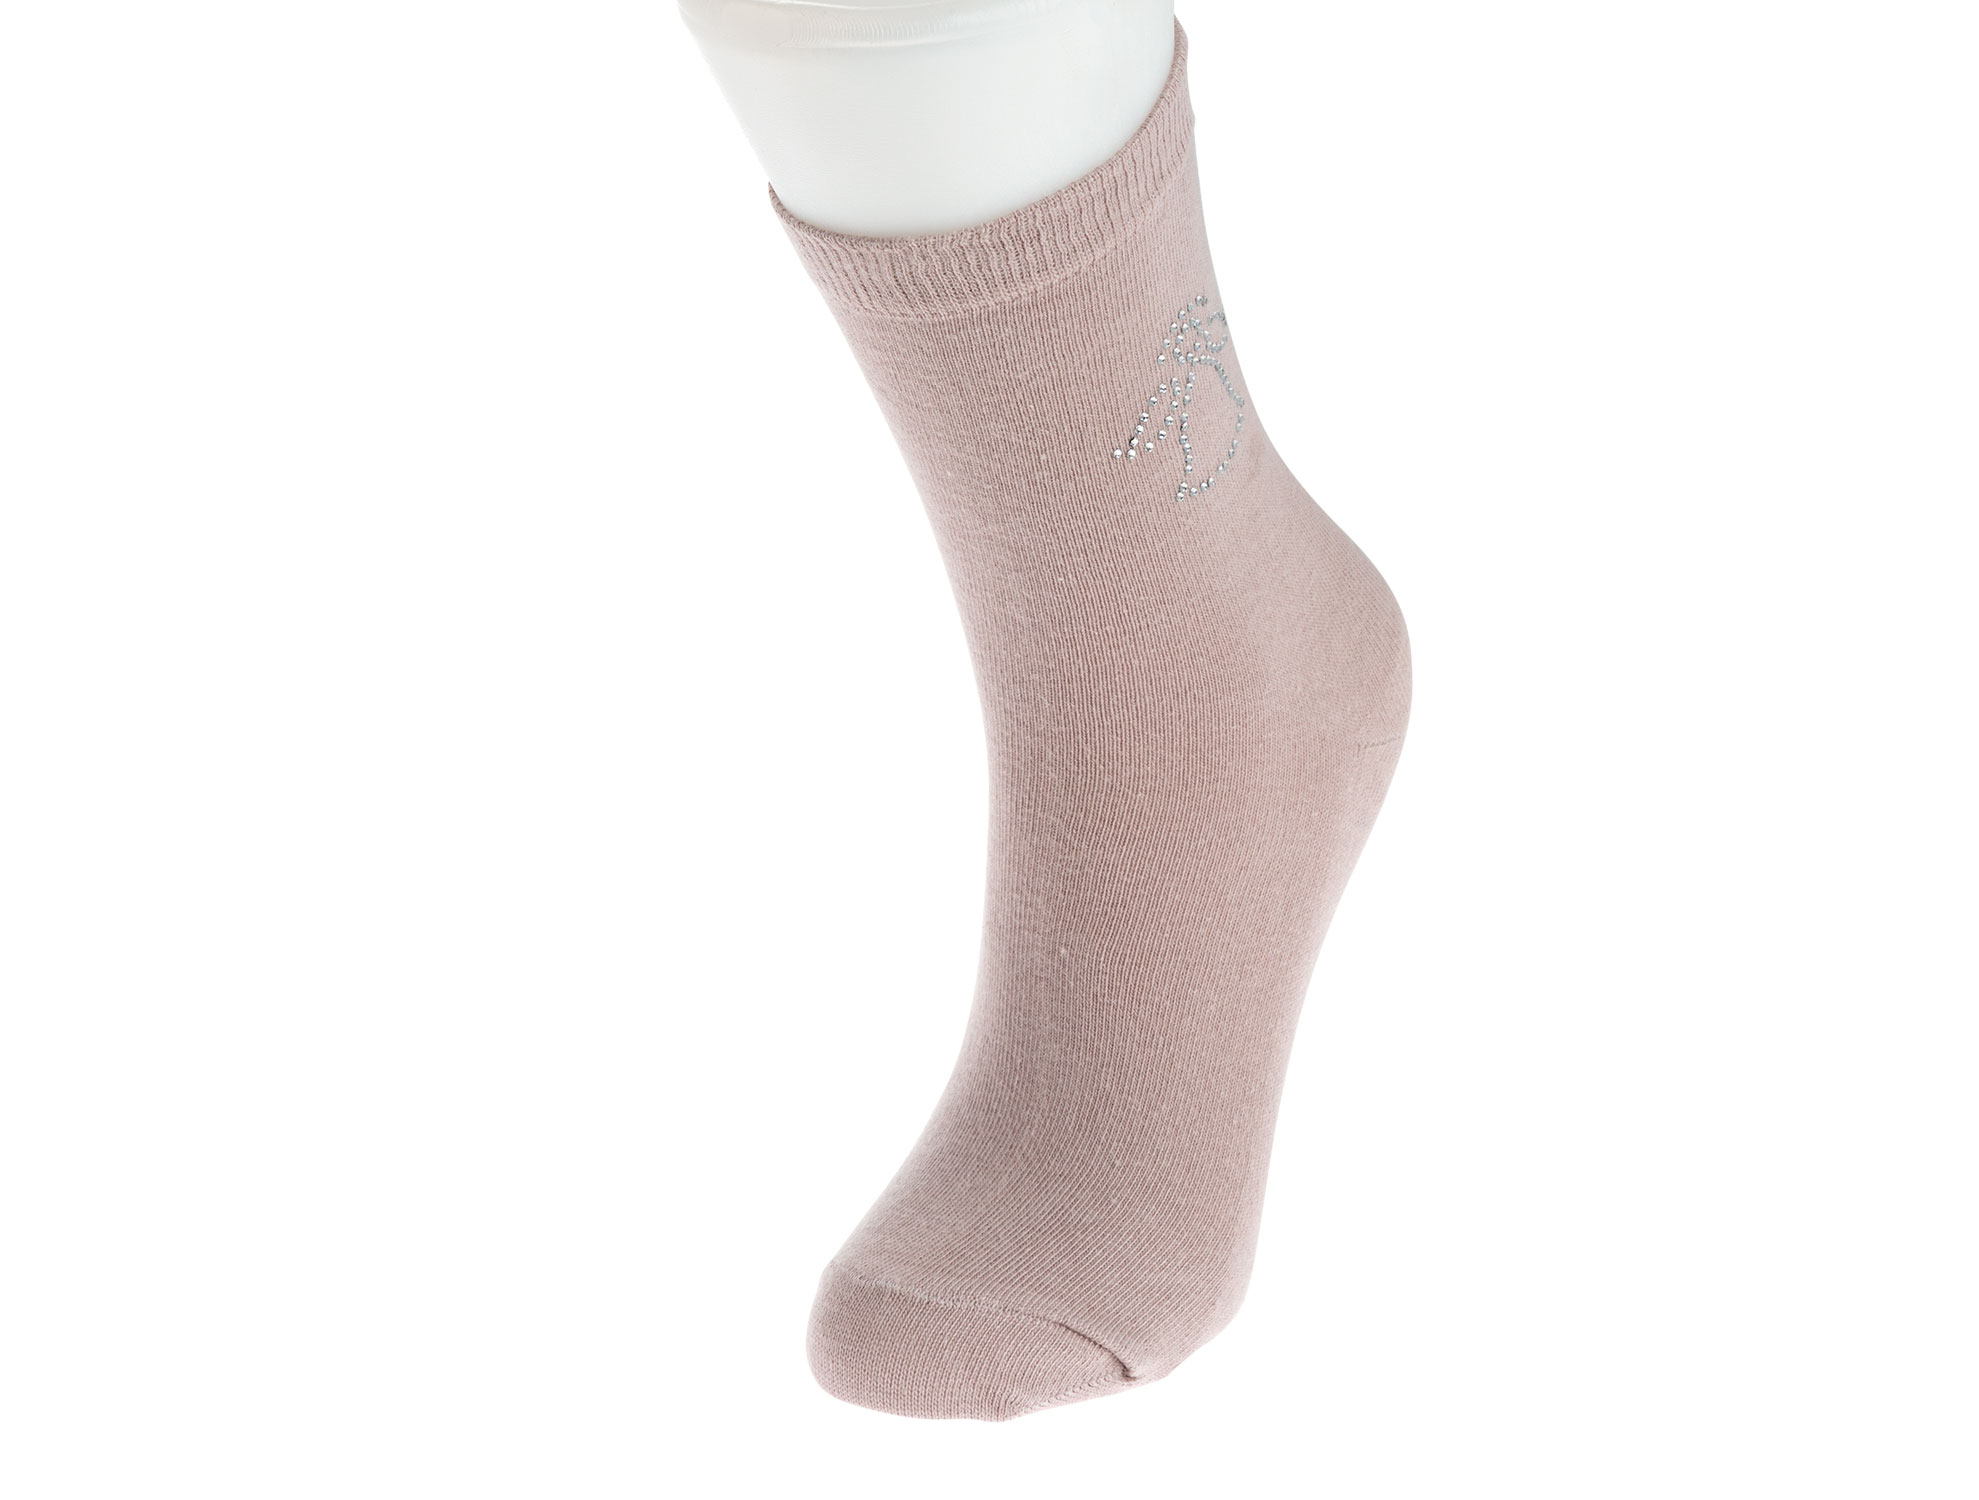  Kristal Melek Baskılı Bayan Soket Çorap